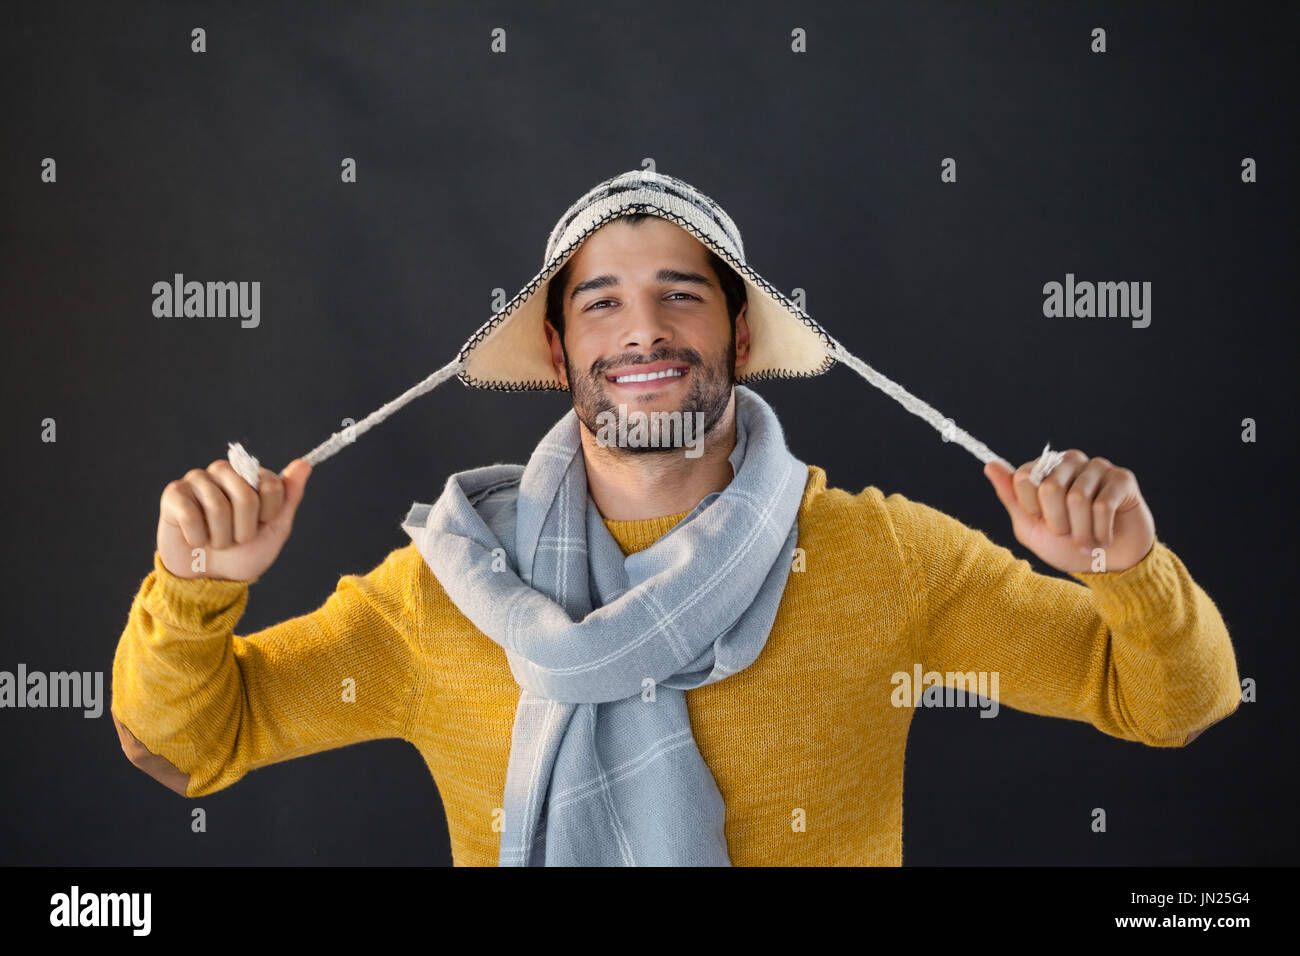 Ritratto di uomo sorridente holding wooly hat su sfondo nero Foto Stock